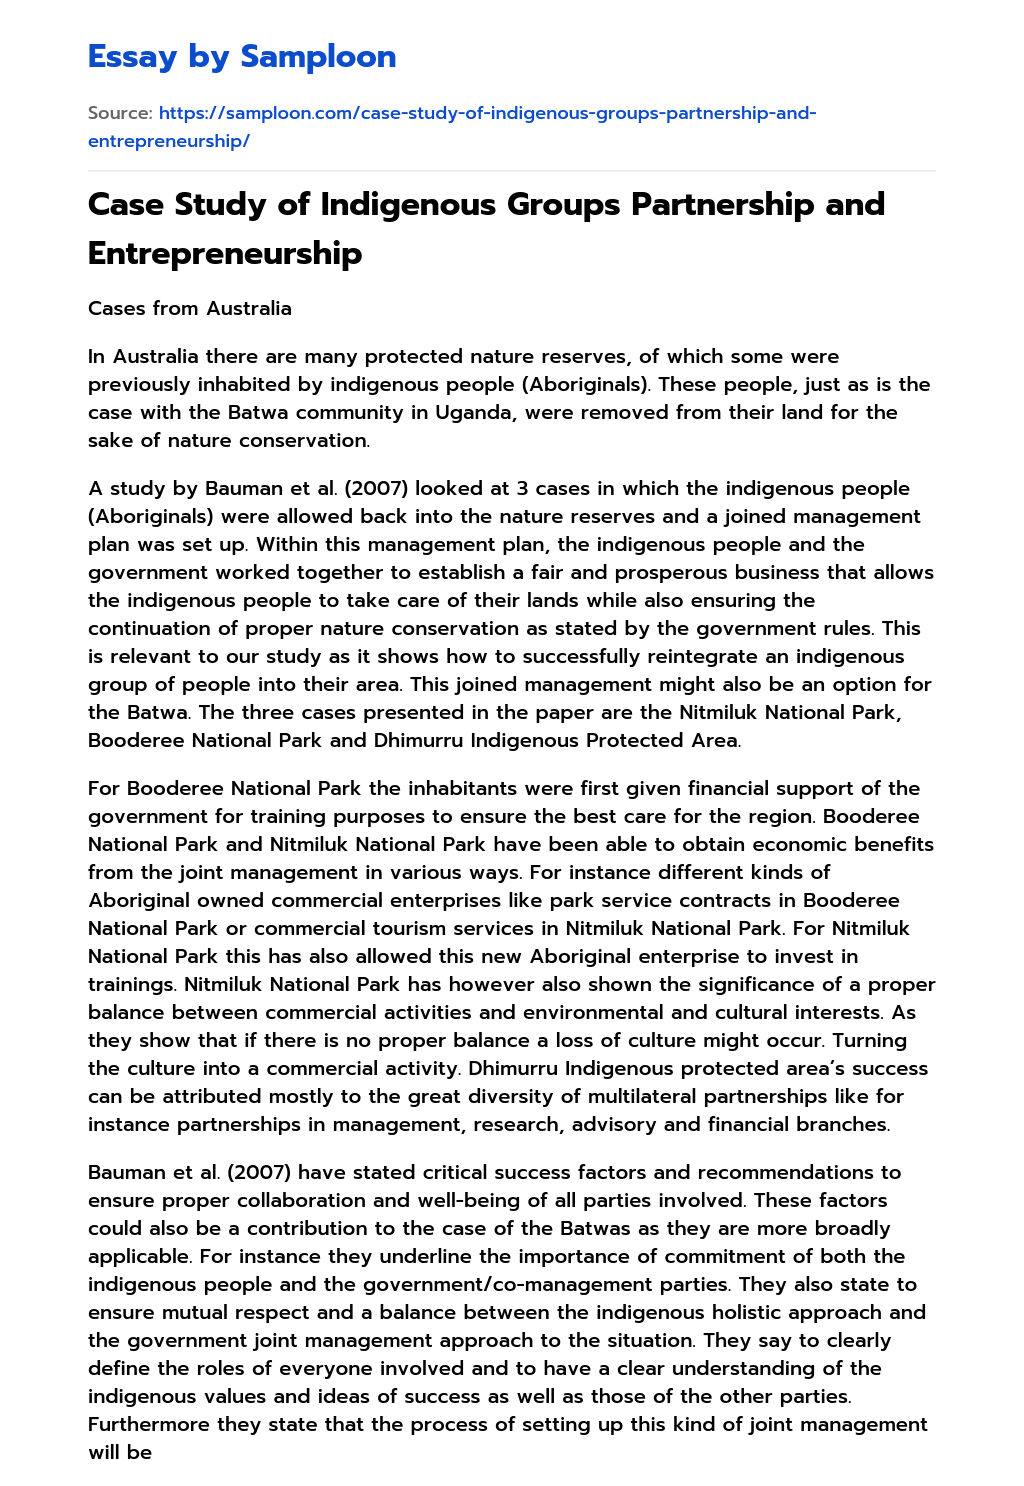 Case Study of Indigenous Groups Partnership and Entrepreneurship essay